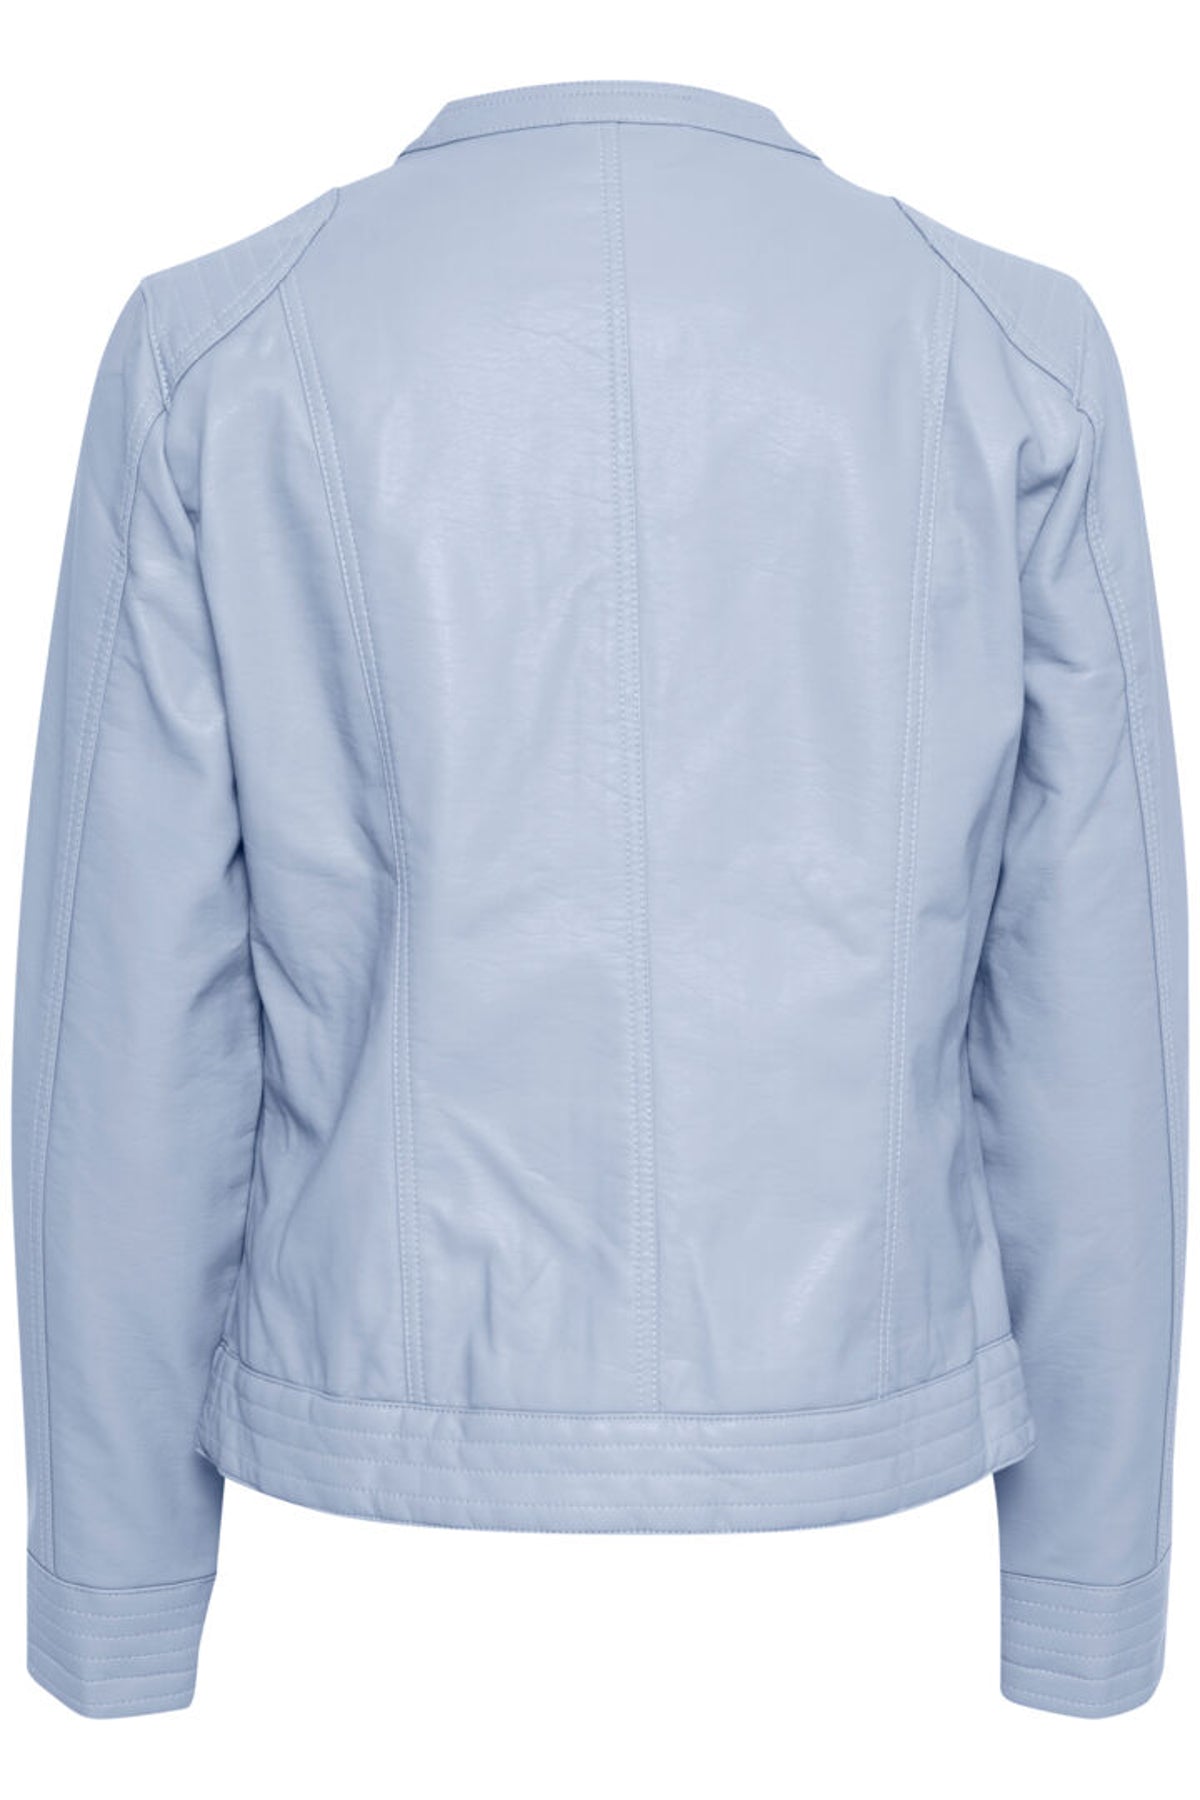 Acom jacket, ice blue